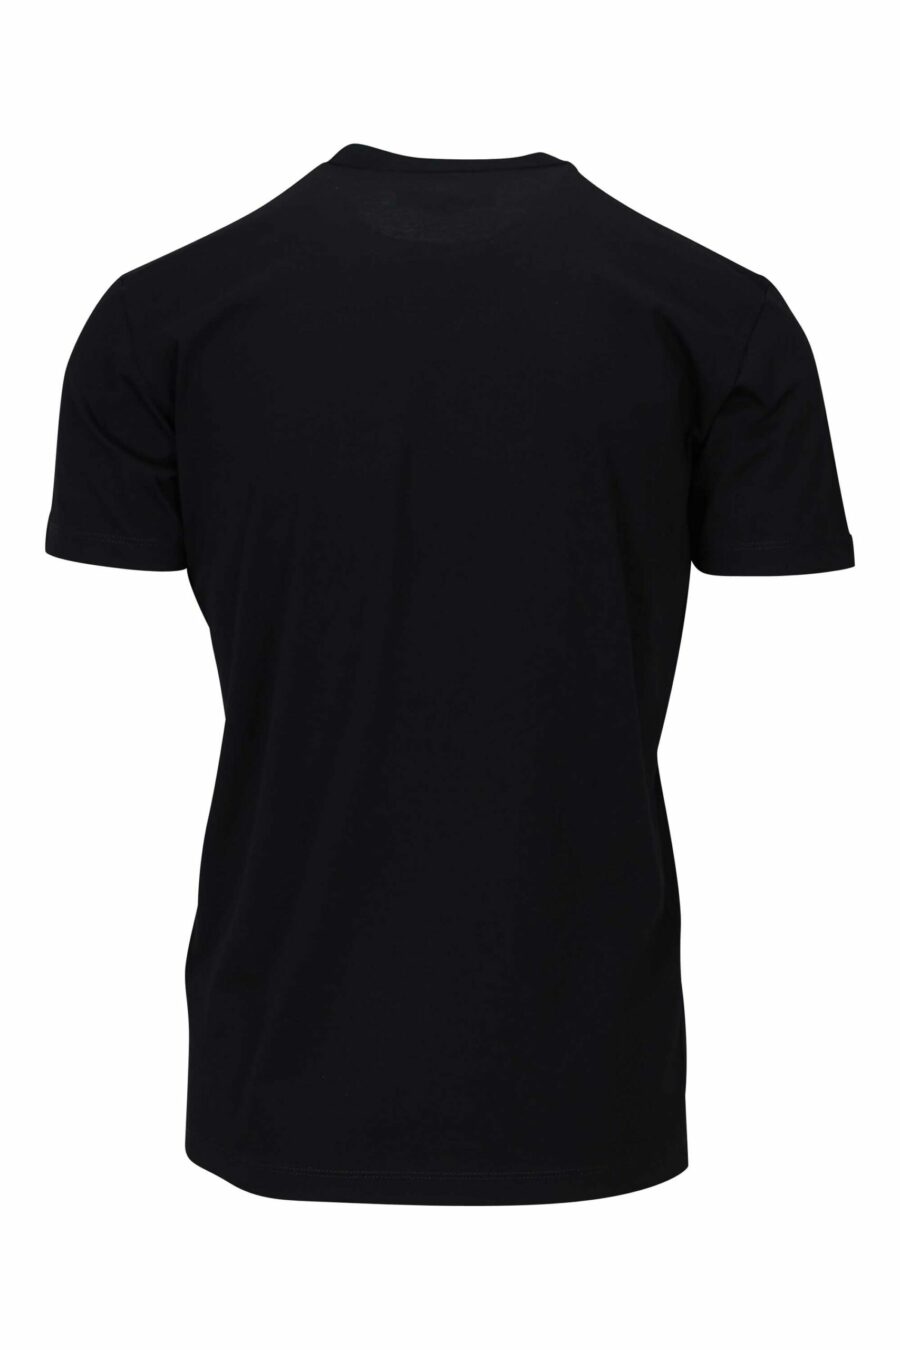 Camiseta negra con minilogo "doodle" corazón - 8052134946312 2 scaled